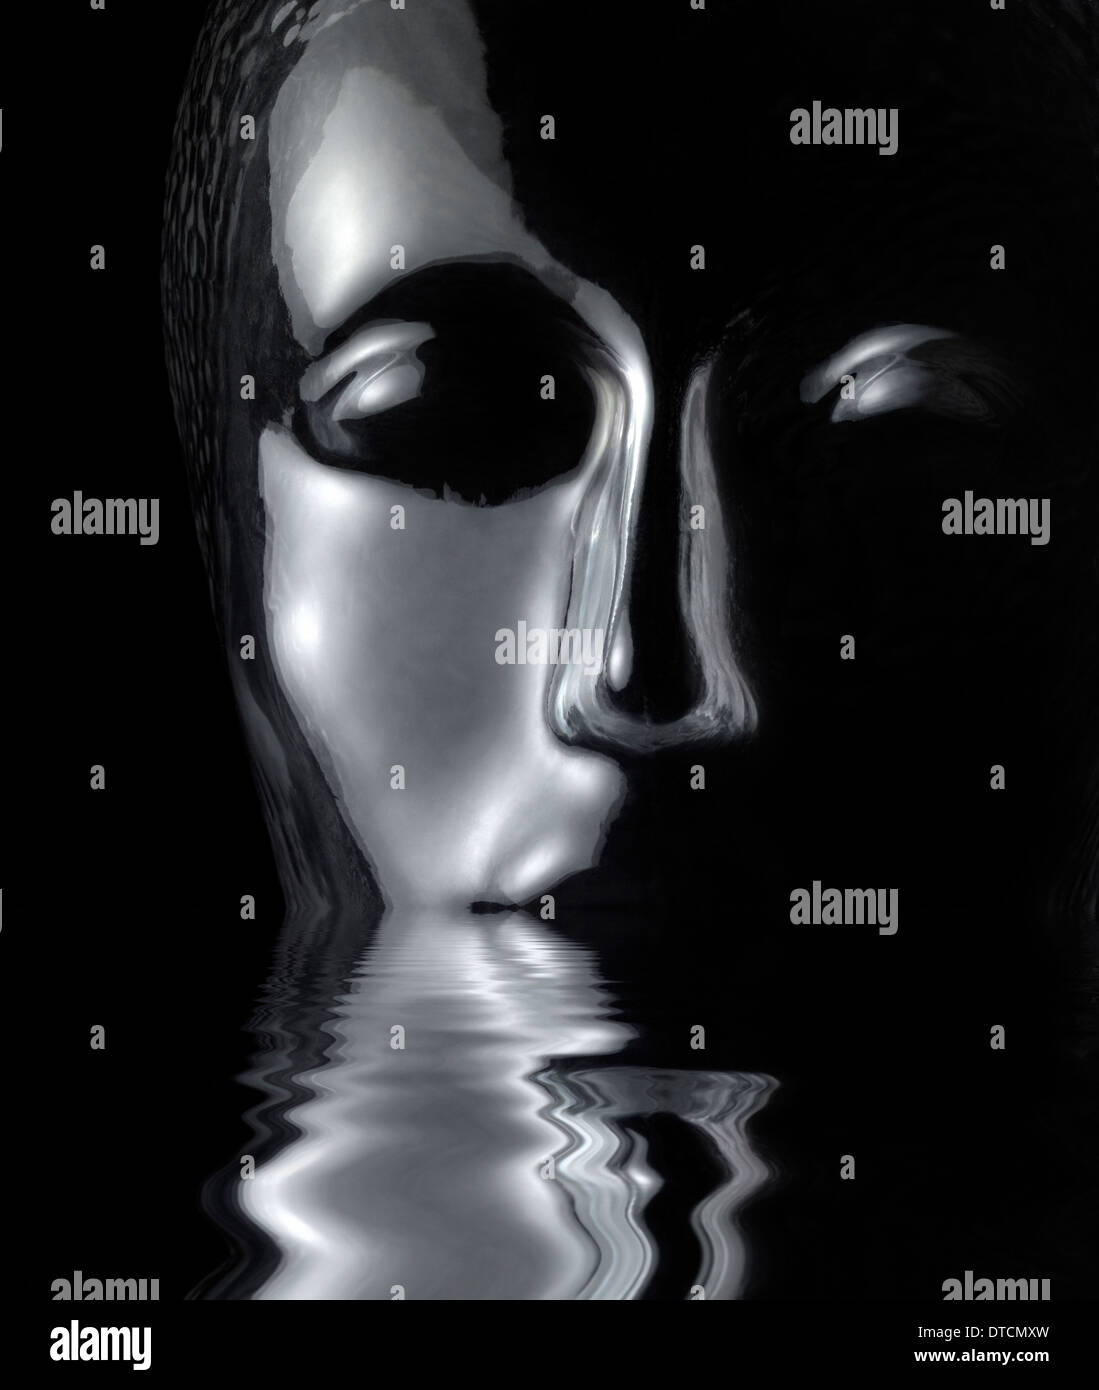 Naufragio riflettente traslucido testa umana fatta di vetro riflettente sulla superficie di acqua nella parte posteriore in nero Foto Stock